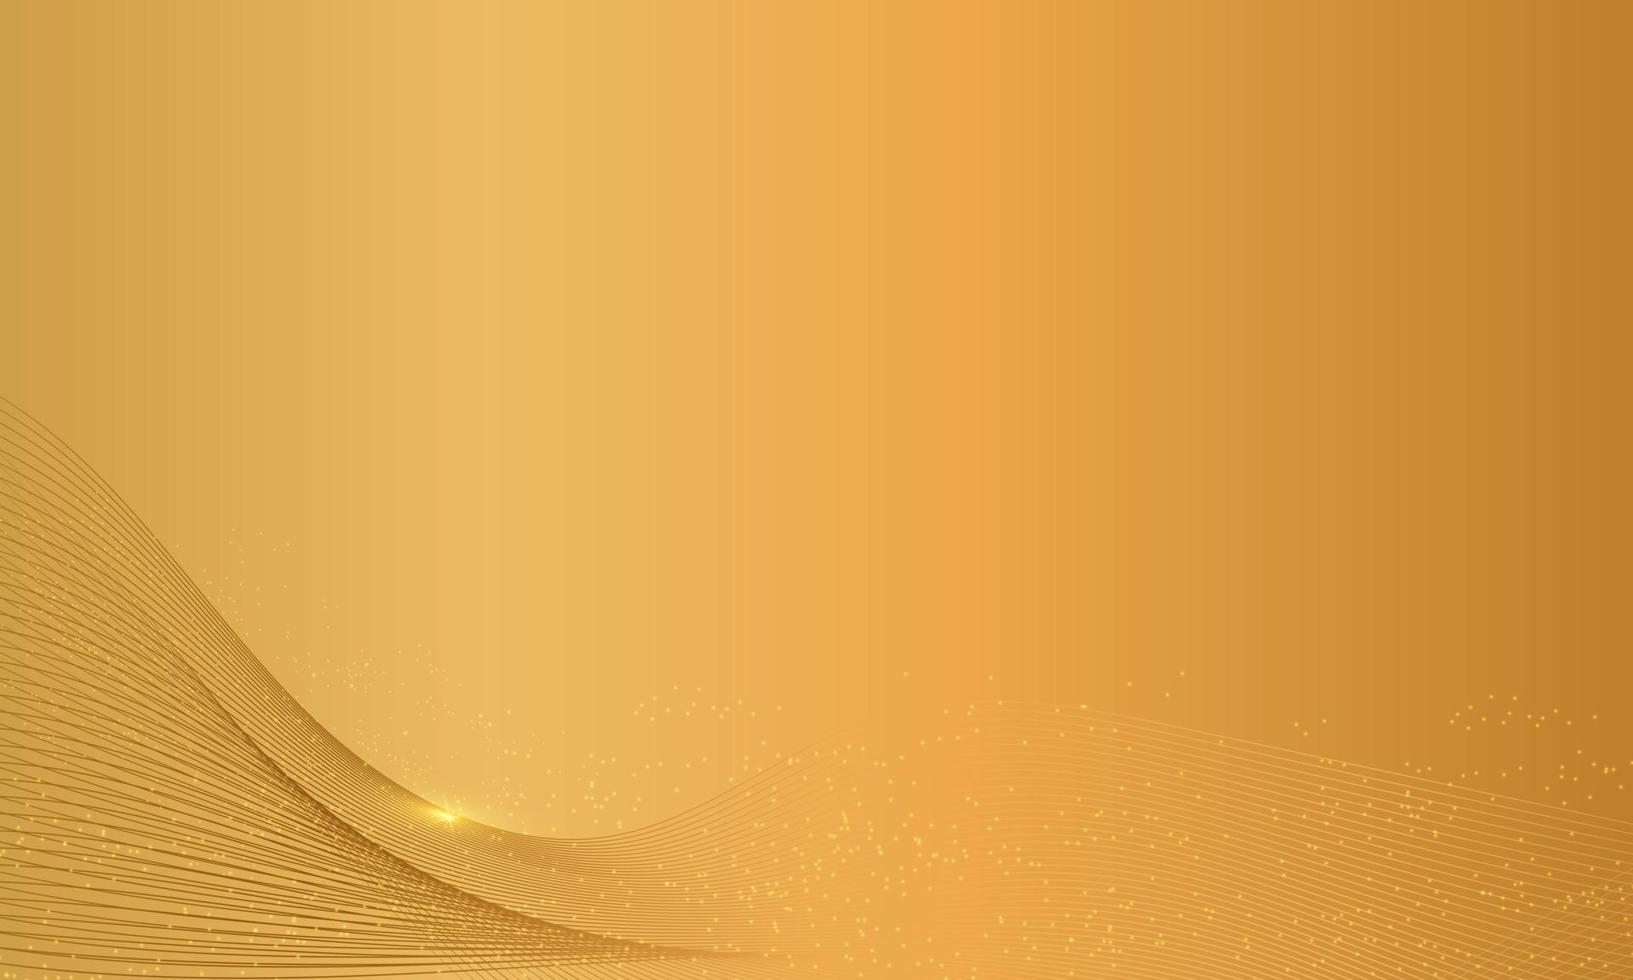 abstrakter goldener Hintergrund mit goldenem Element und Textur, luxuriöses Hintergrundkonzept. geeignet für verschiedene Hintergrunddesigns, Vorlagen, Banner, Poster, Präsentationen usw. vektor